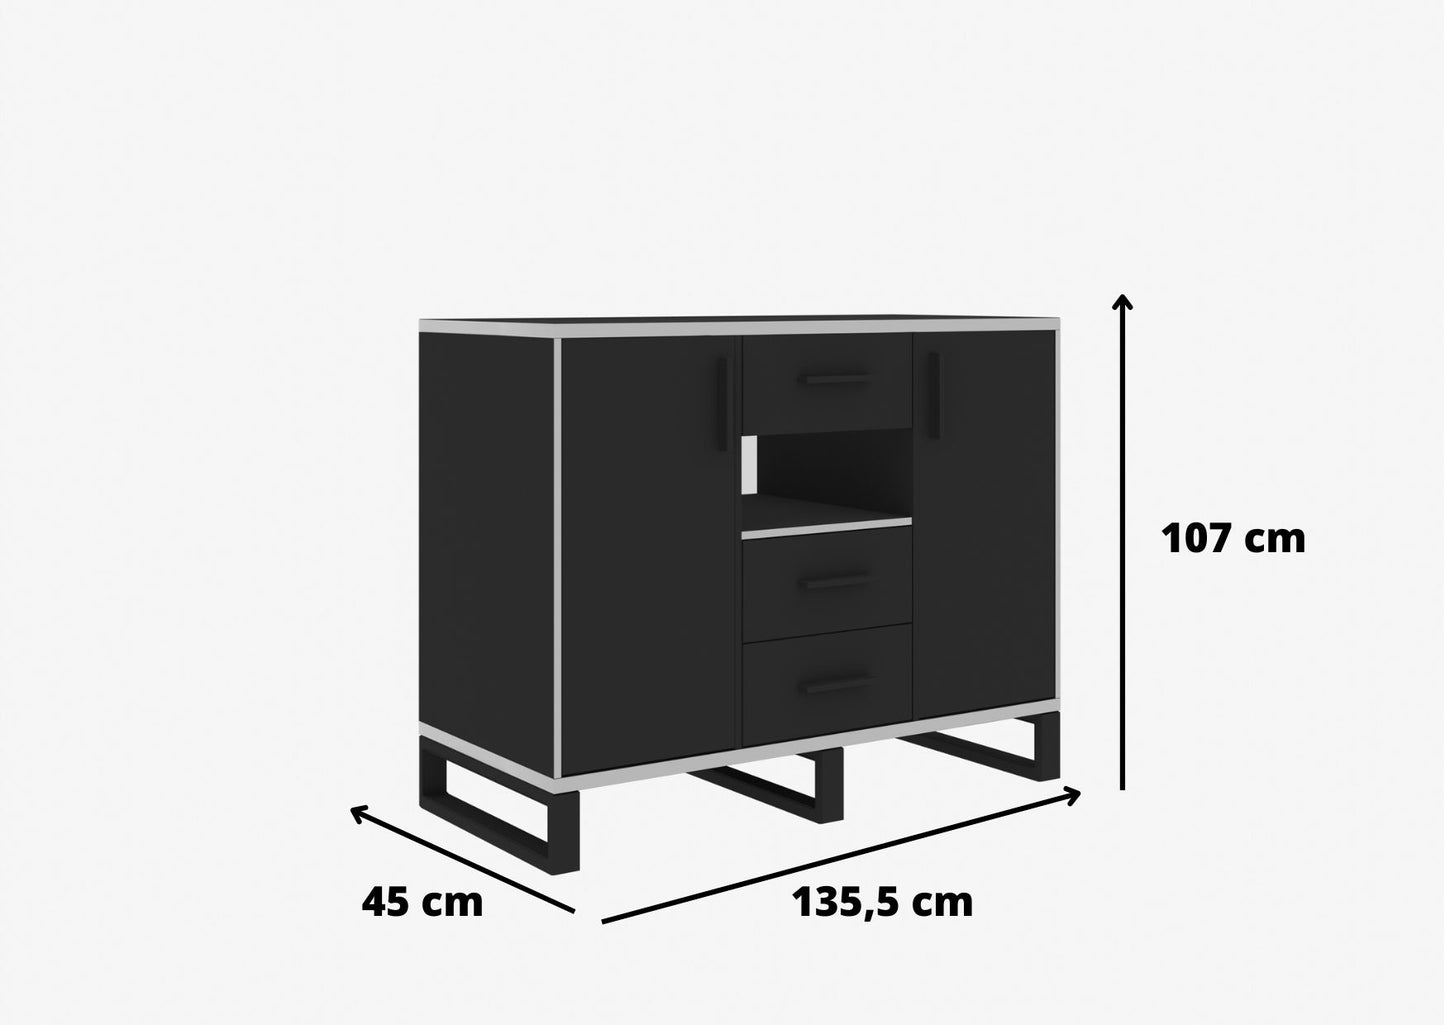 Wymiary komody LUX loft 3 szuflady 2 fronty są tak dostosowane, aby mebel spełnił wszystkie niezbędne wymagania: zarówno pod względem stabilności, jak i pojemności.